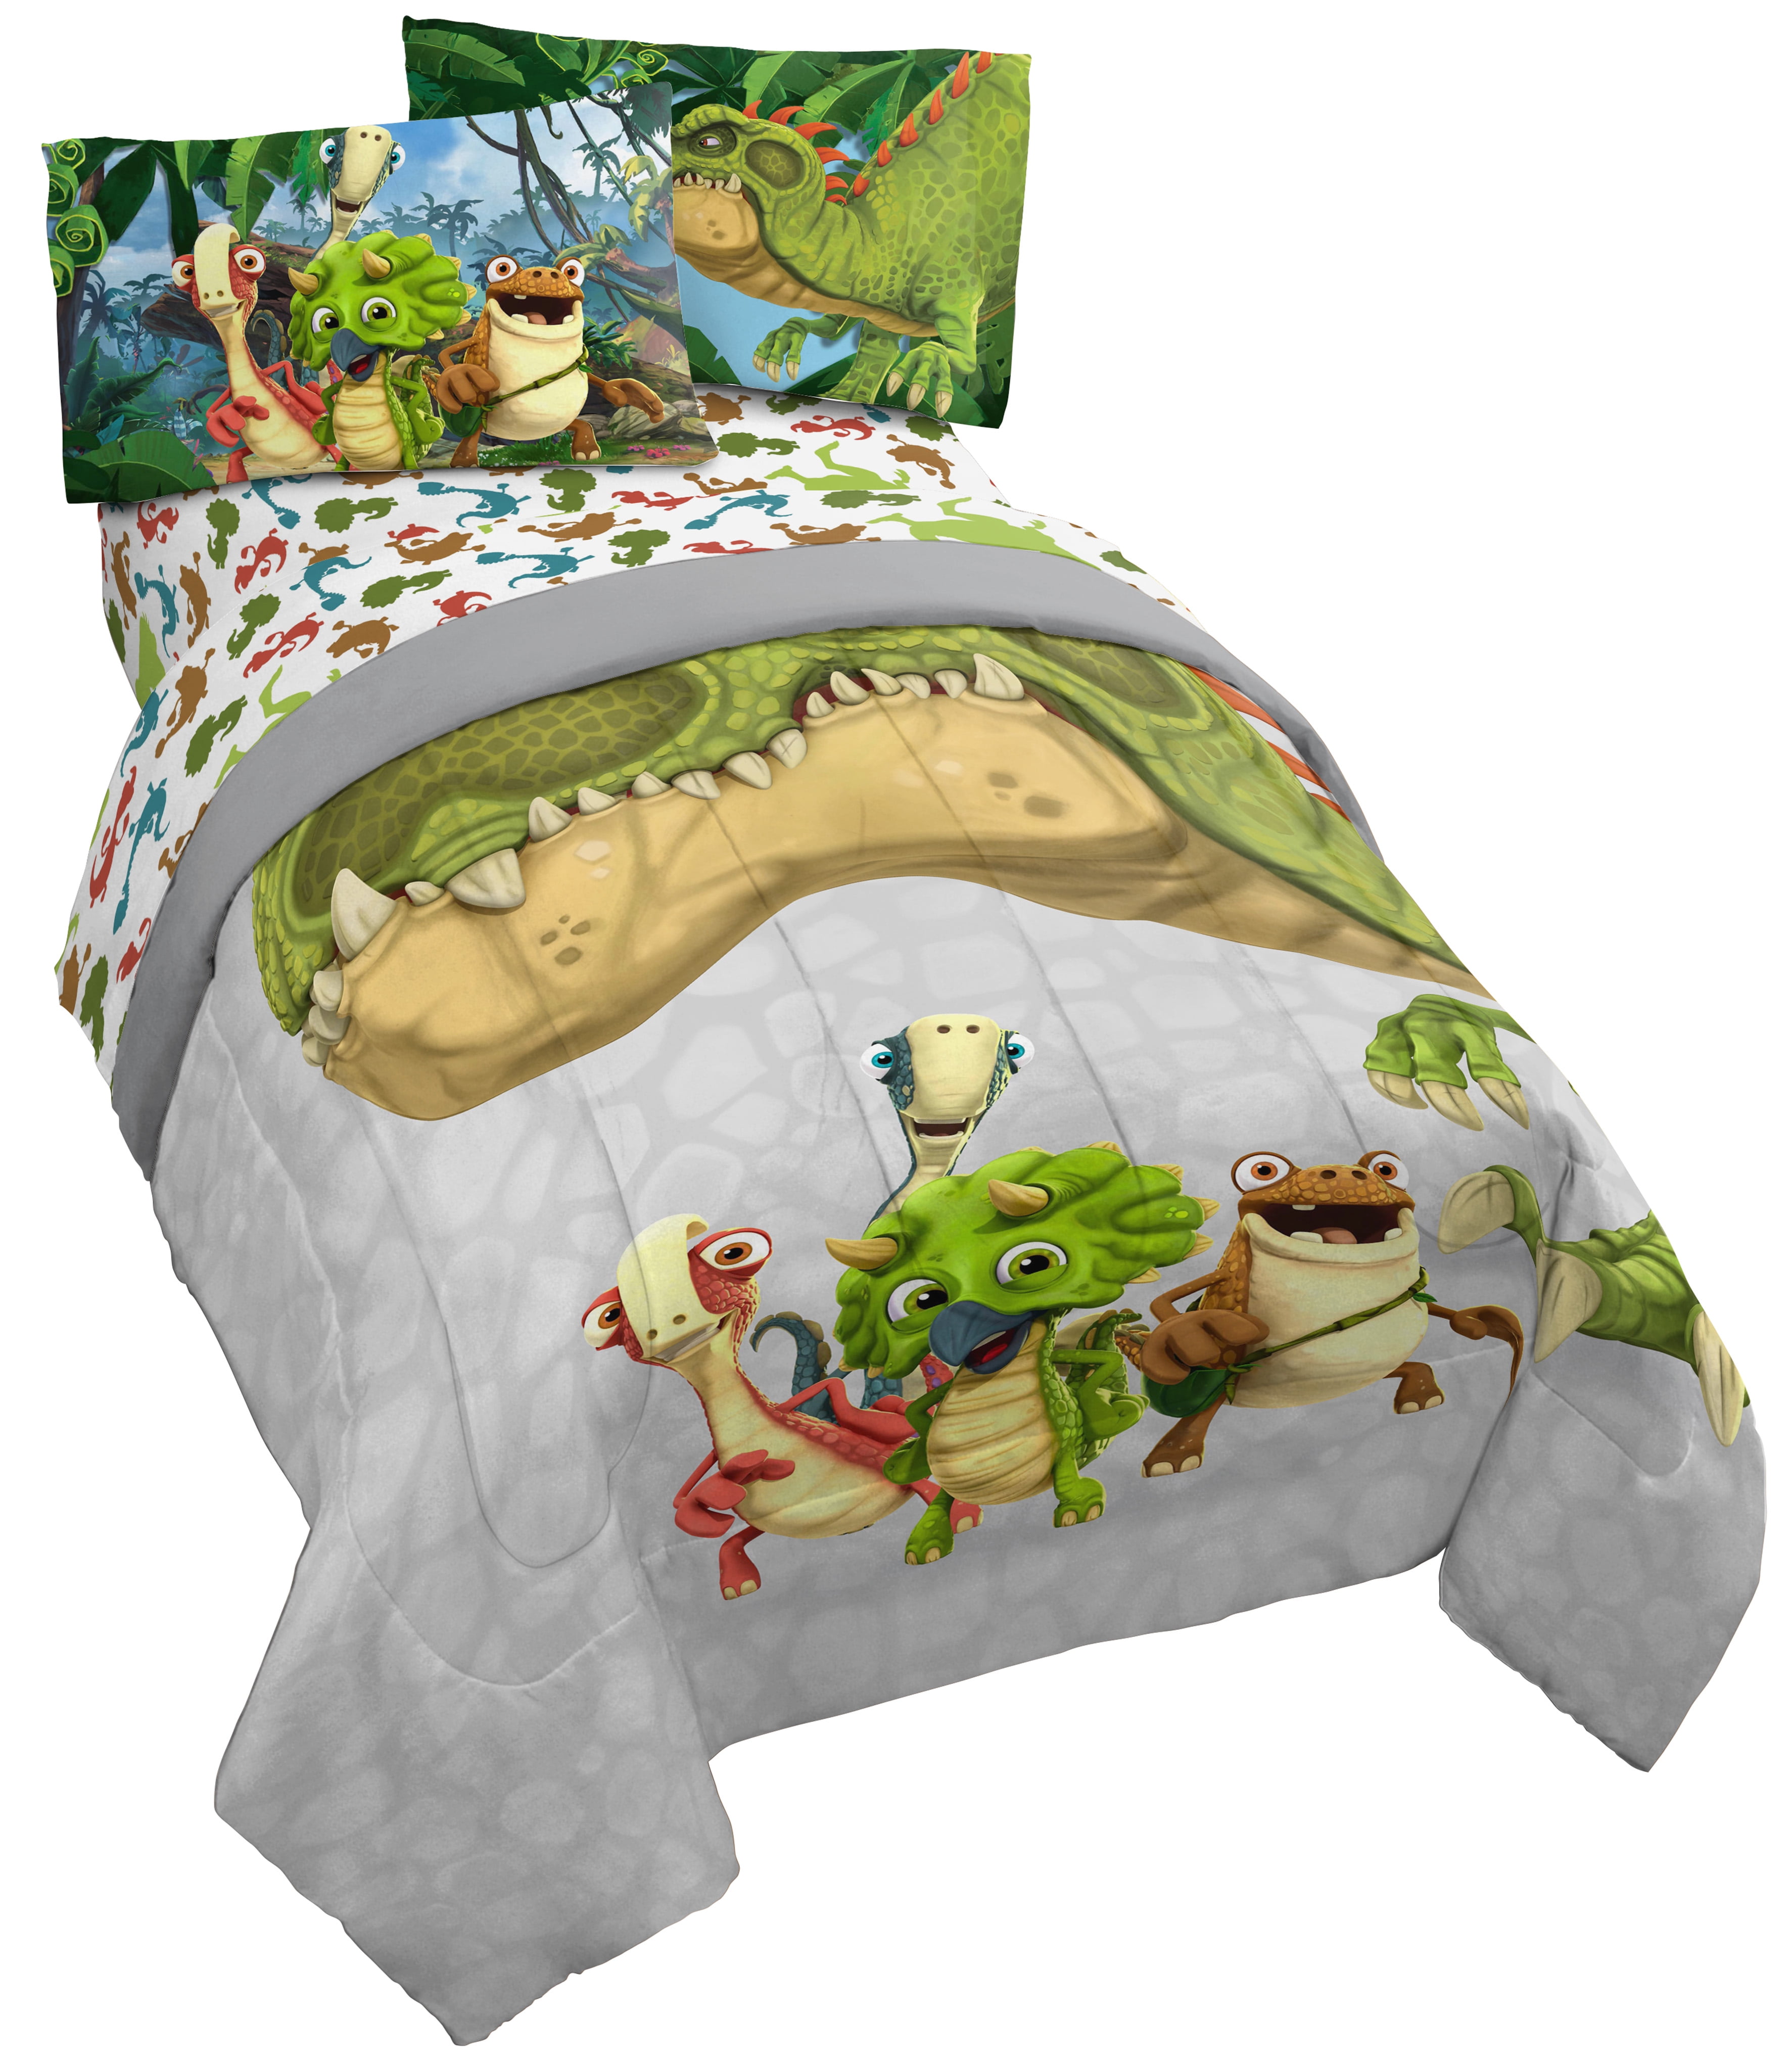 Gigantosaurus Dinosaur Kids Twin Bed In A Bag Bedding Set Walmartcom Walmartcom